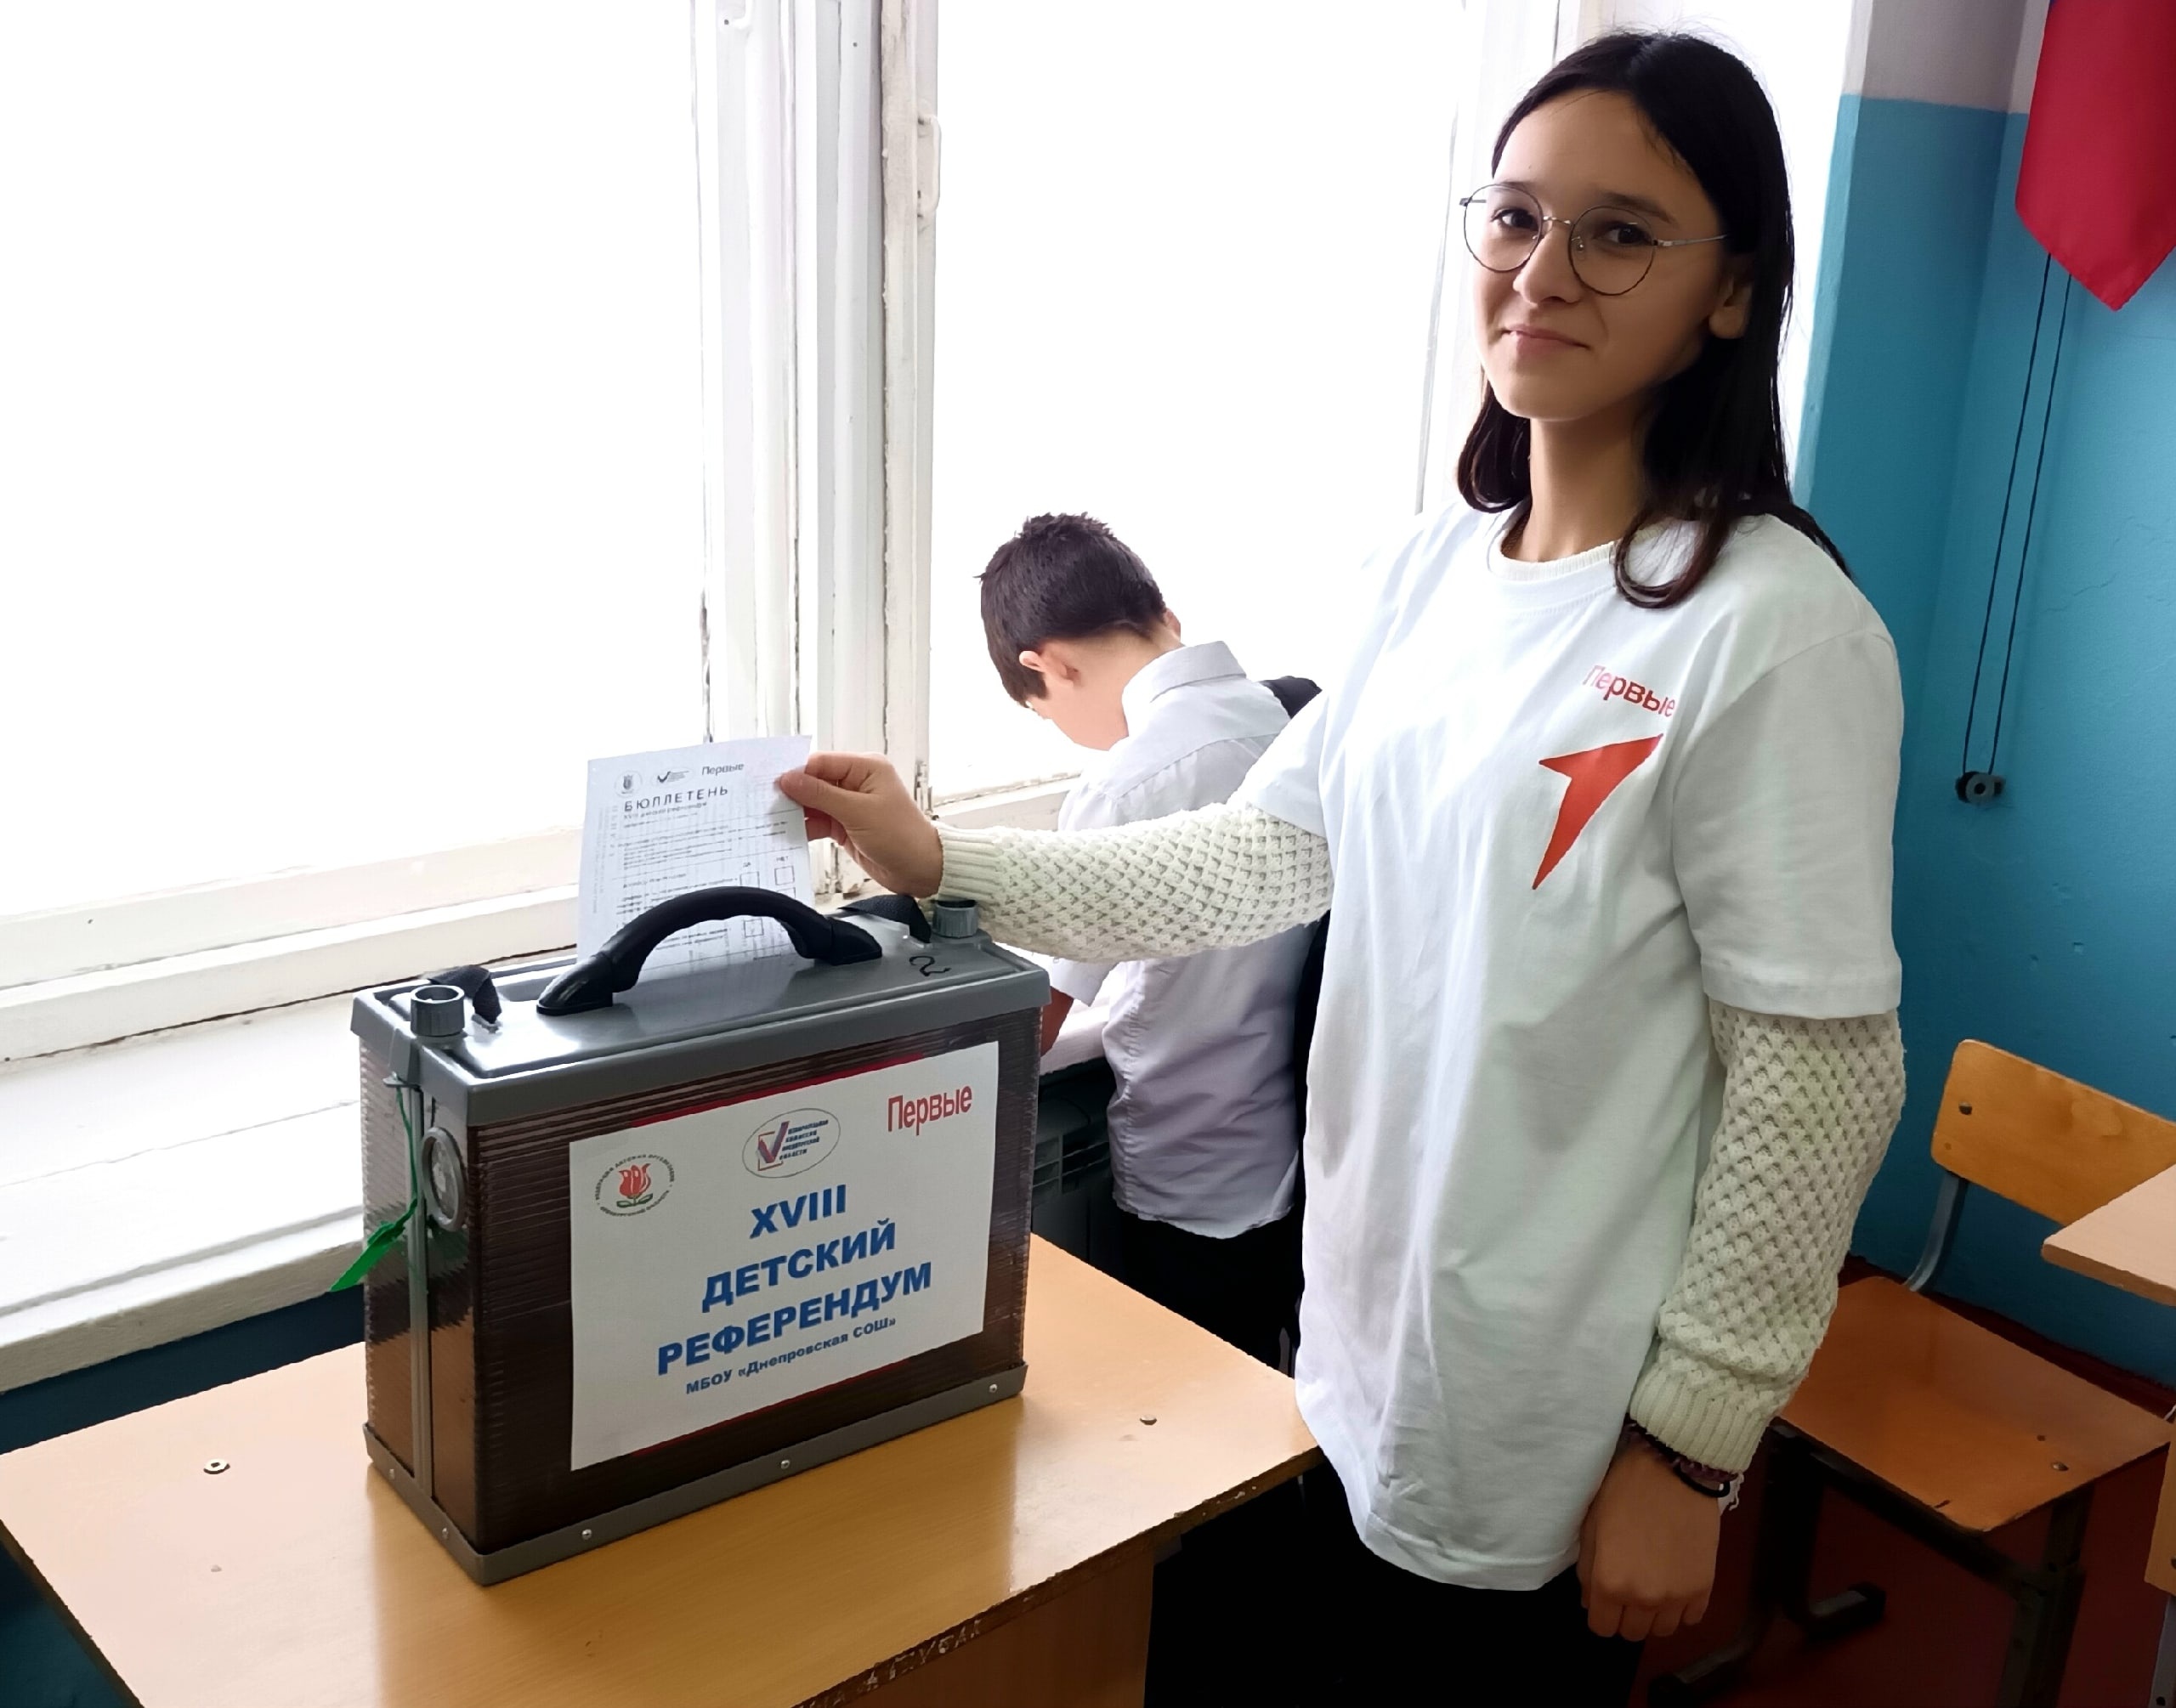 XVIII областной детский Референдум.